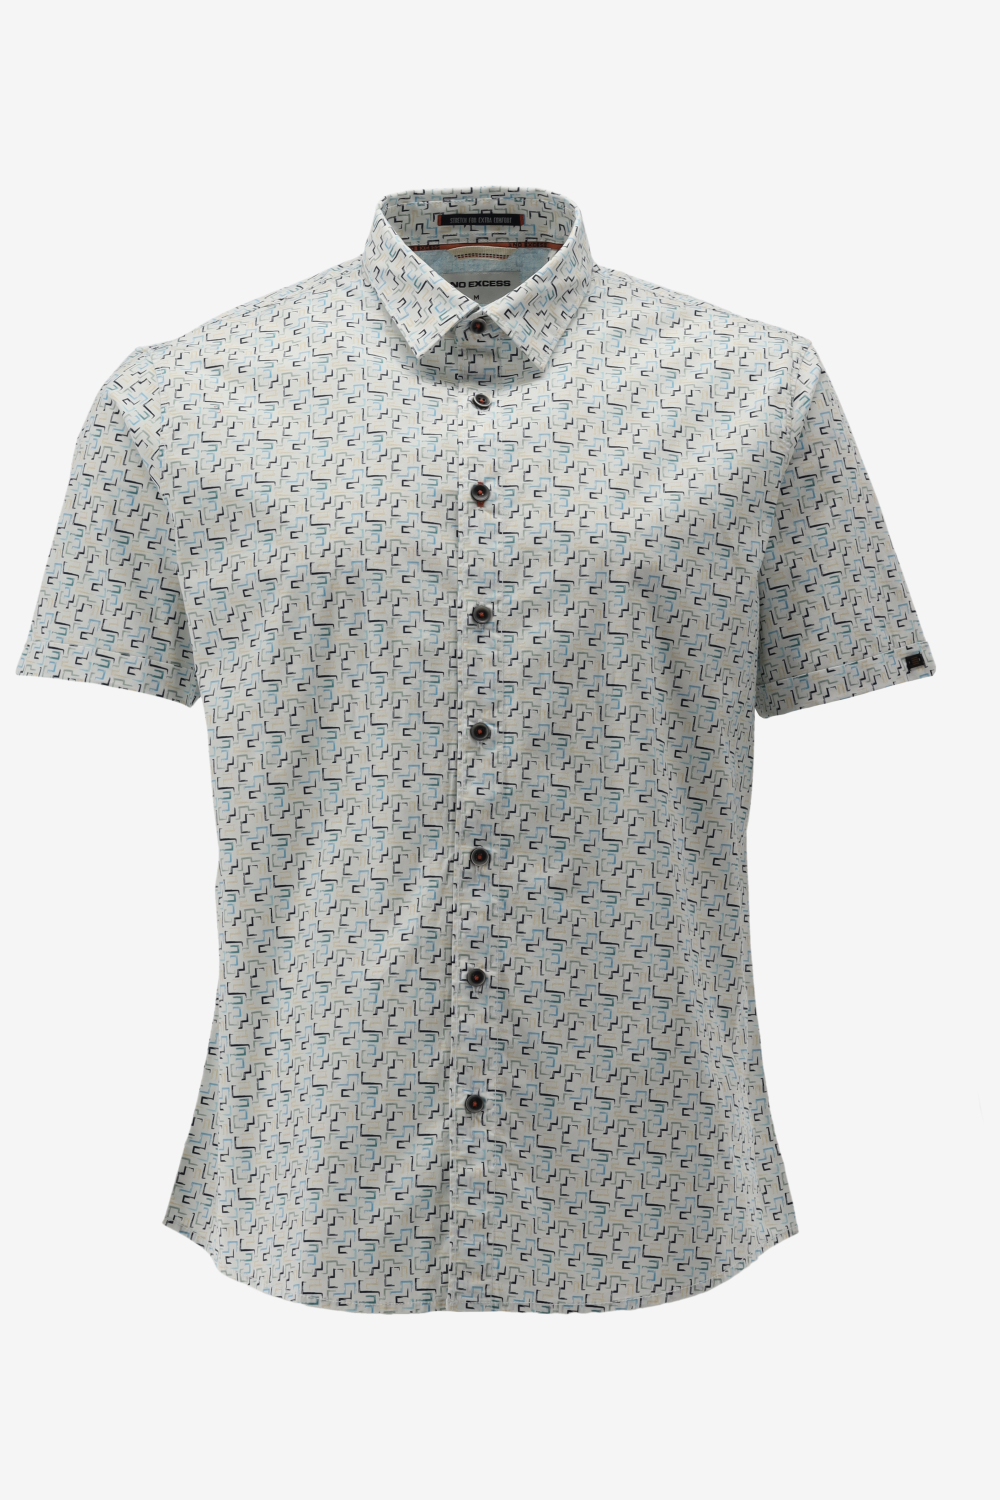 NO-EXCESS Overhemd Shirt Short Sleeve Stretch Allover Printed 23440243 036 Aqua Mannen Maat - M